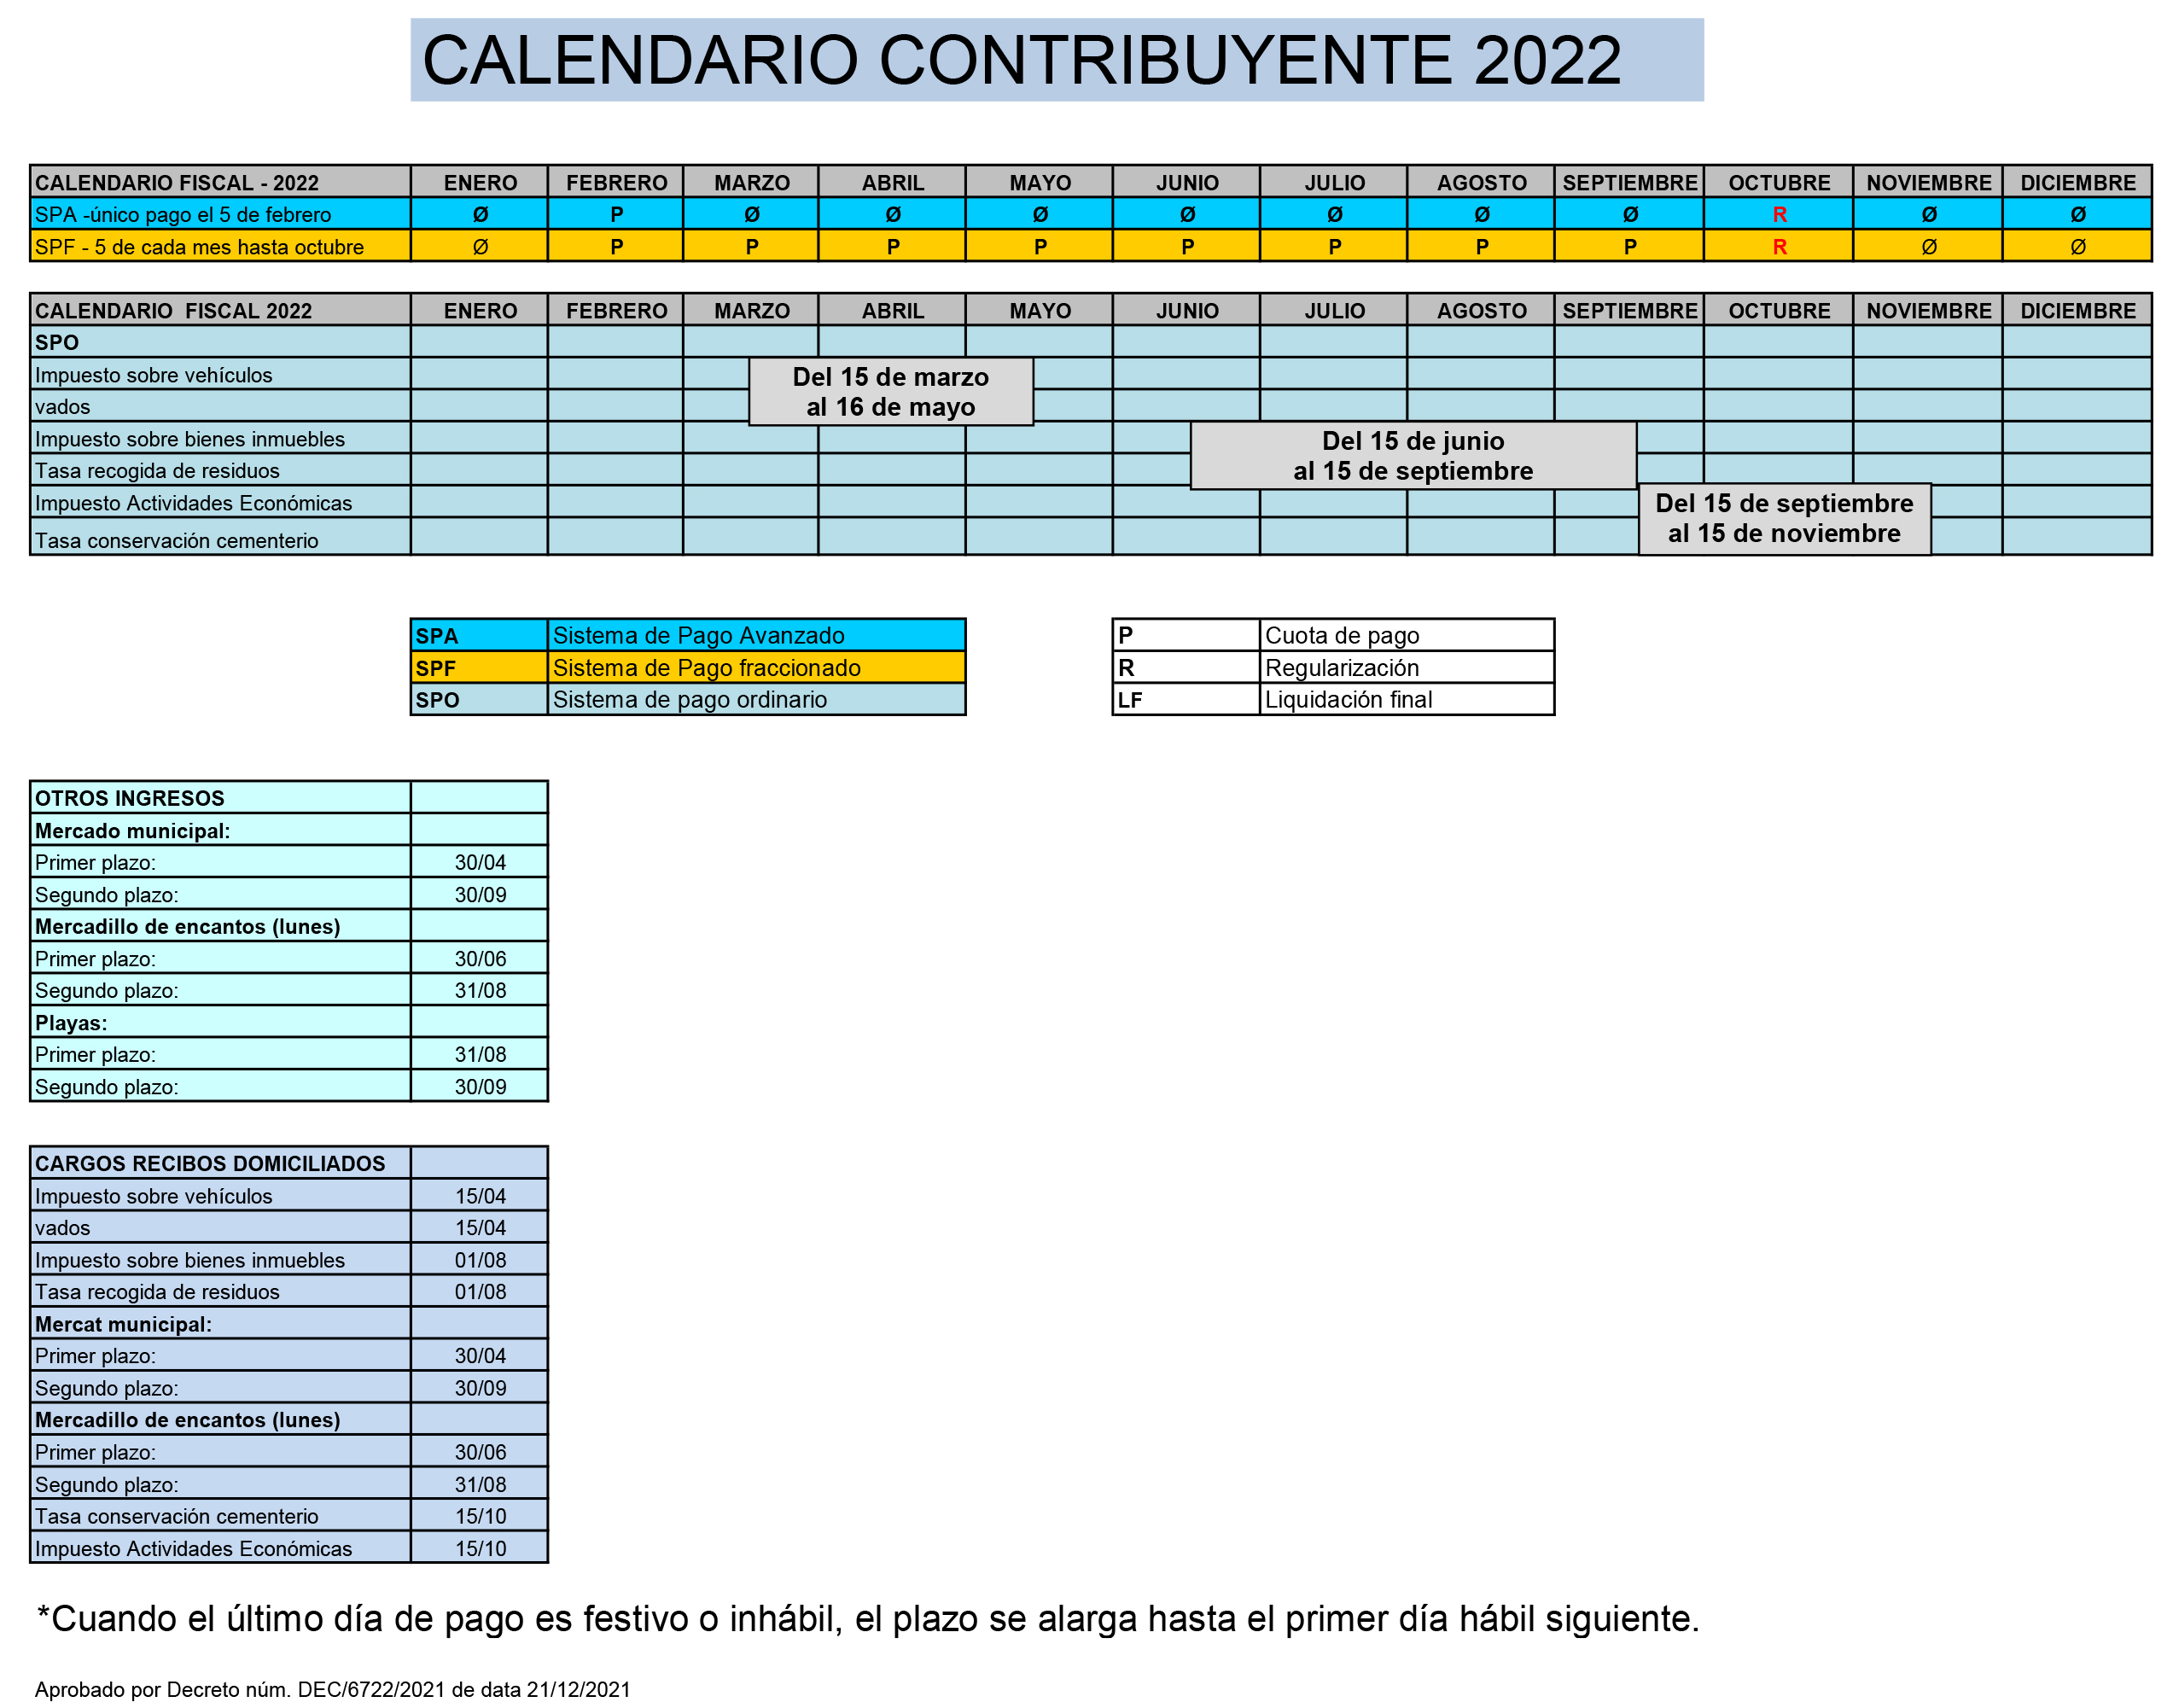 CALENDARIO FISCAL 2022.jpg